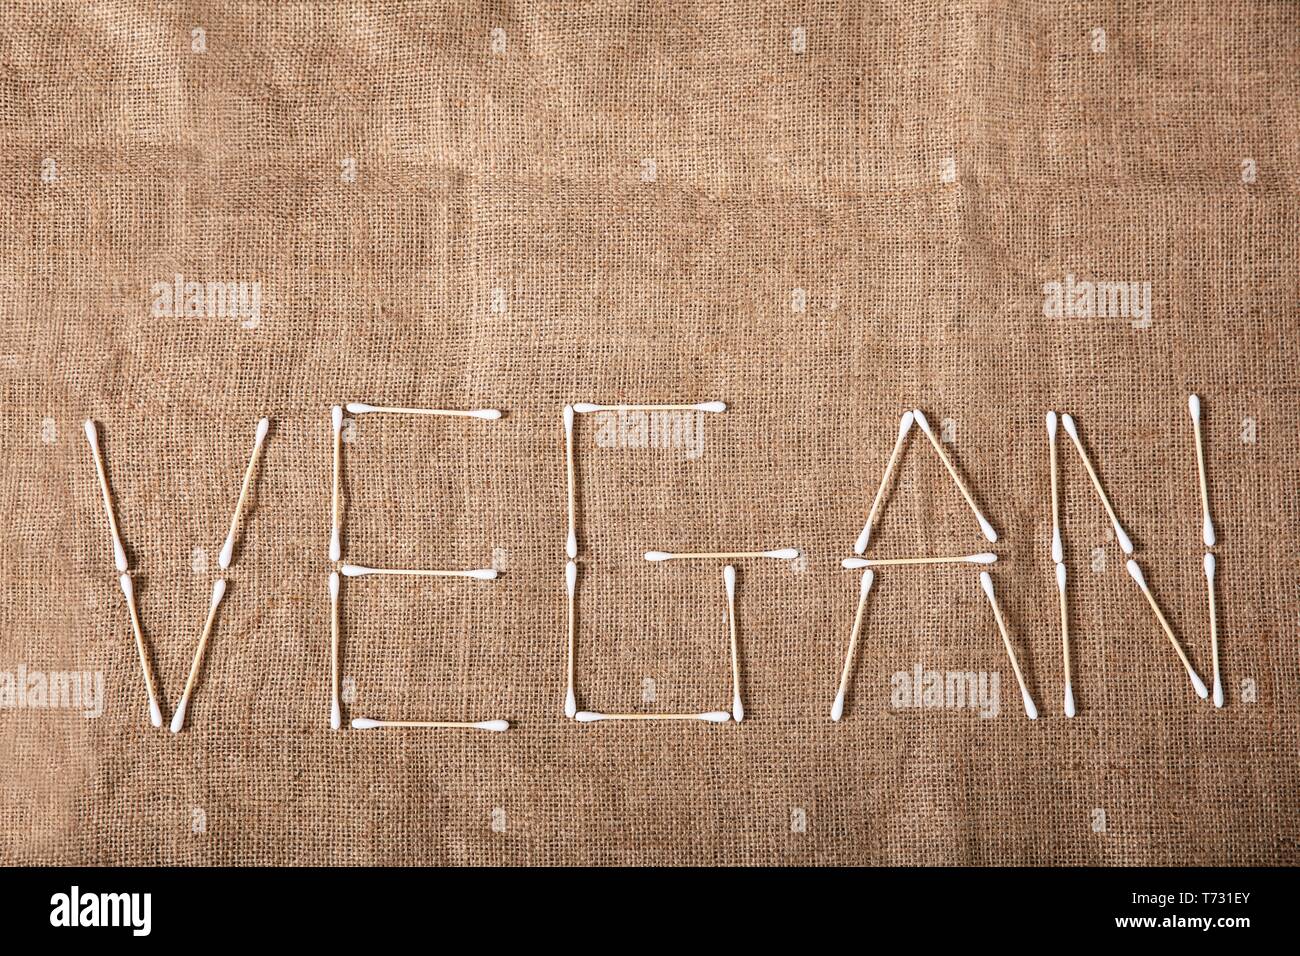 Eine Ansicht von Vegan Text mit Holz- Wattestäbchen über Sack Tuch geschrieben Stockfoto